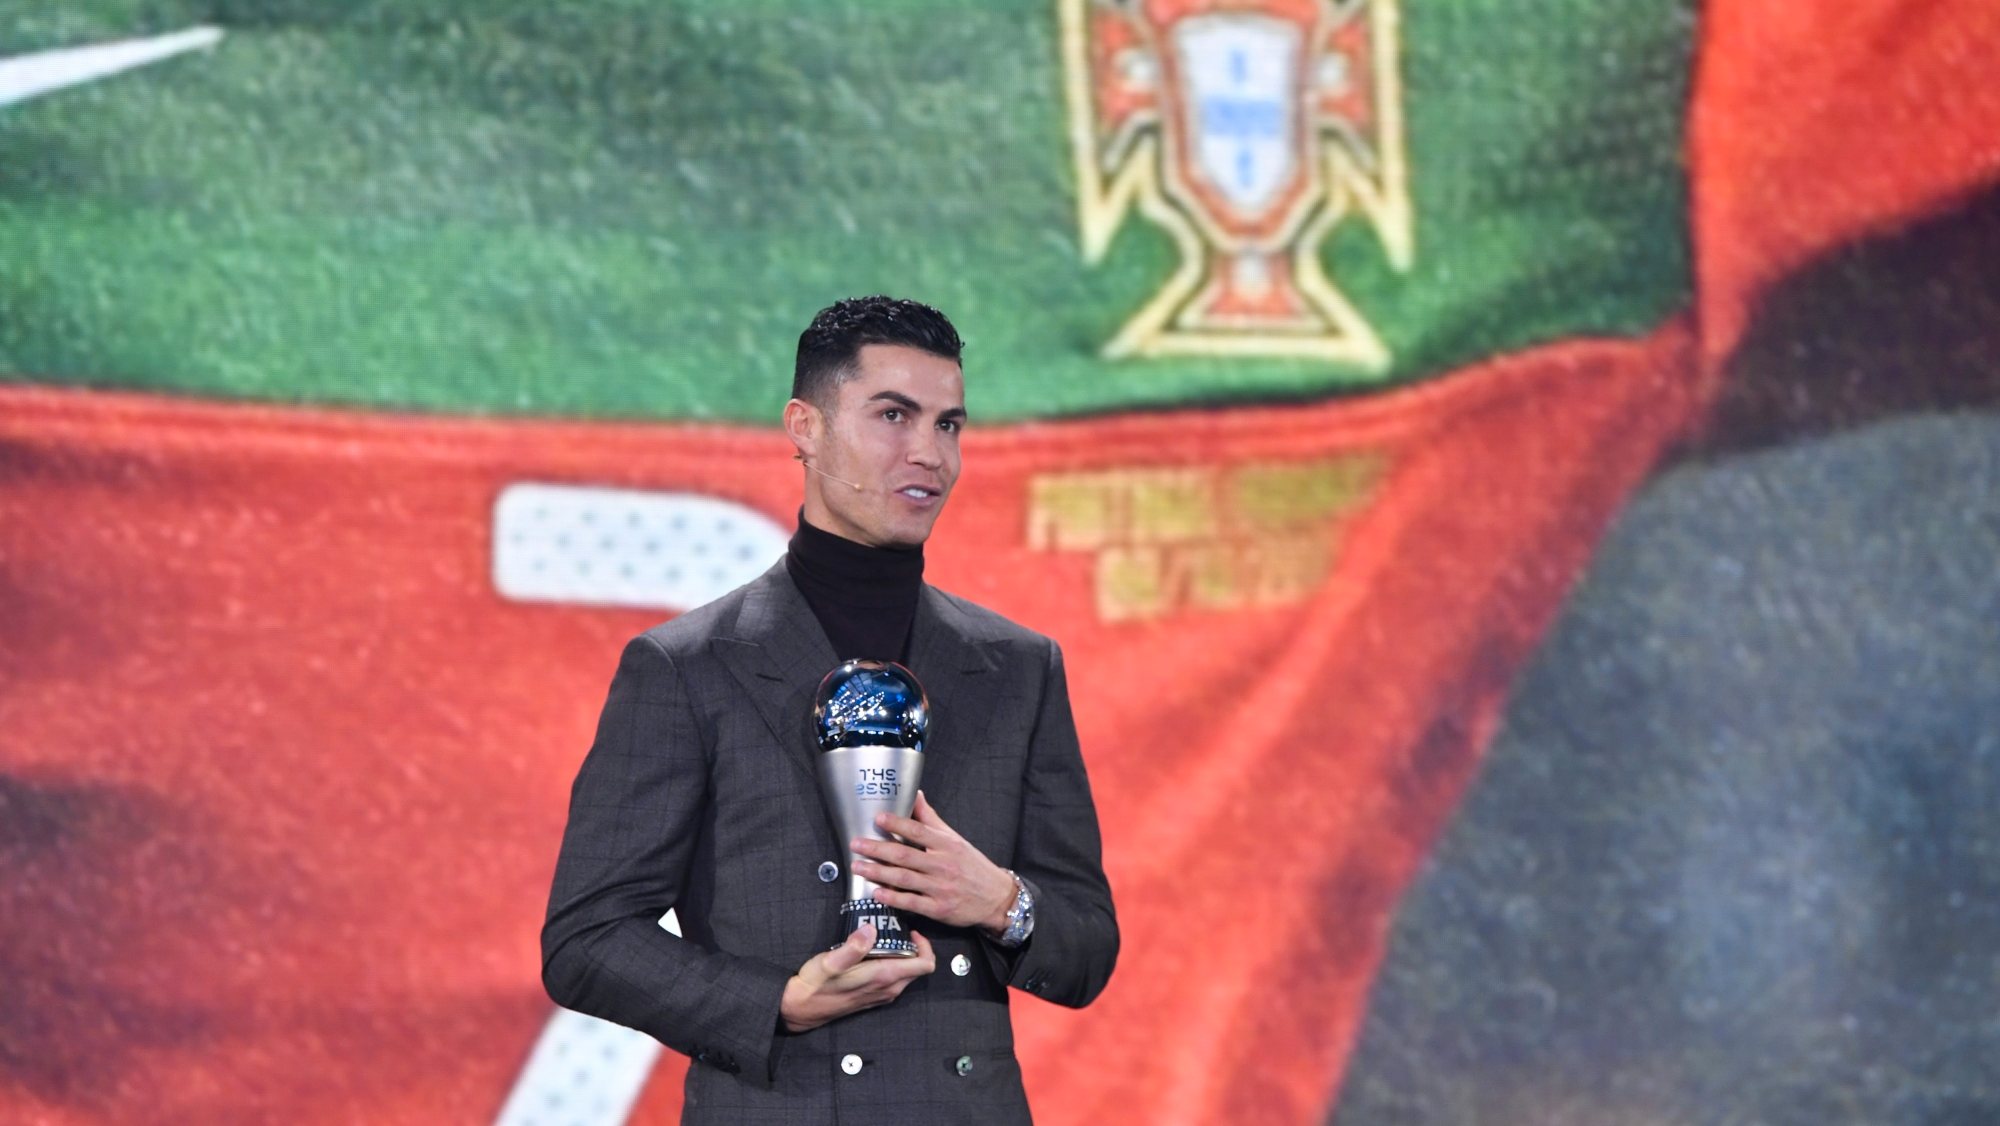 Ronaldo esteve presente em Zurique e recebeu o prémio das mãos do presidente da FIFA, Gianni Infantino